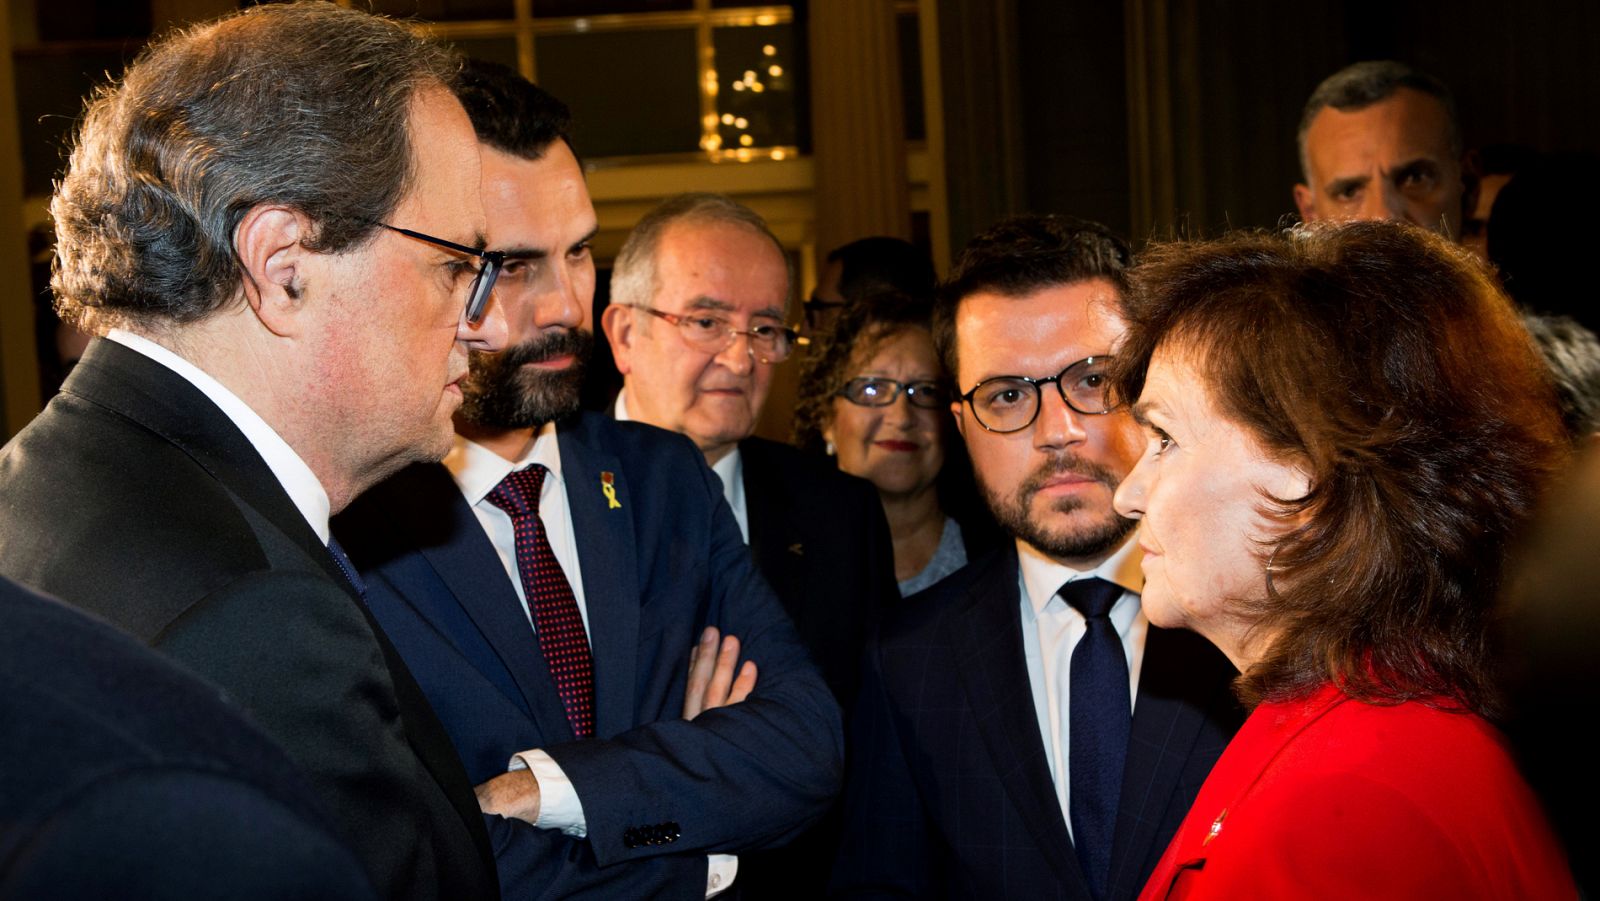 Vídeo: El Gobierno y la Generalitat acuerdan crear un espacio de diálogo entre partidos - RTVE.es